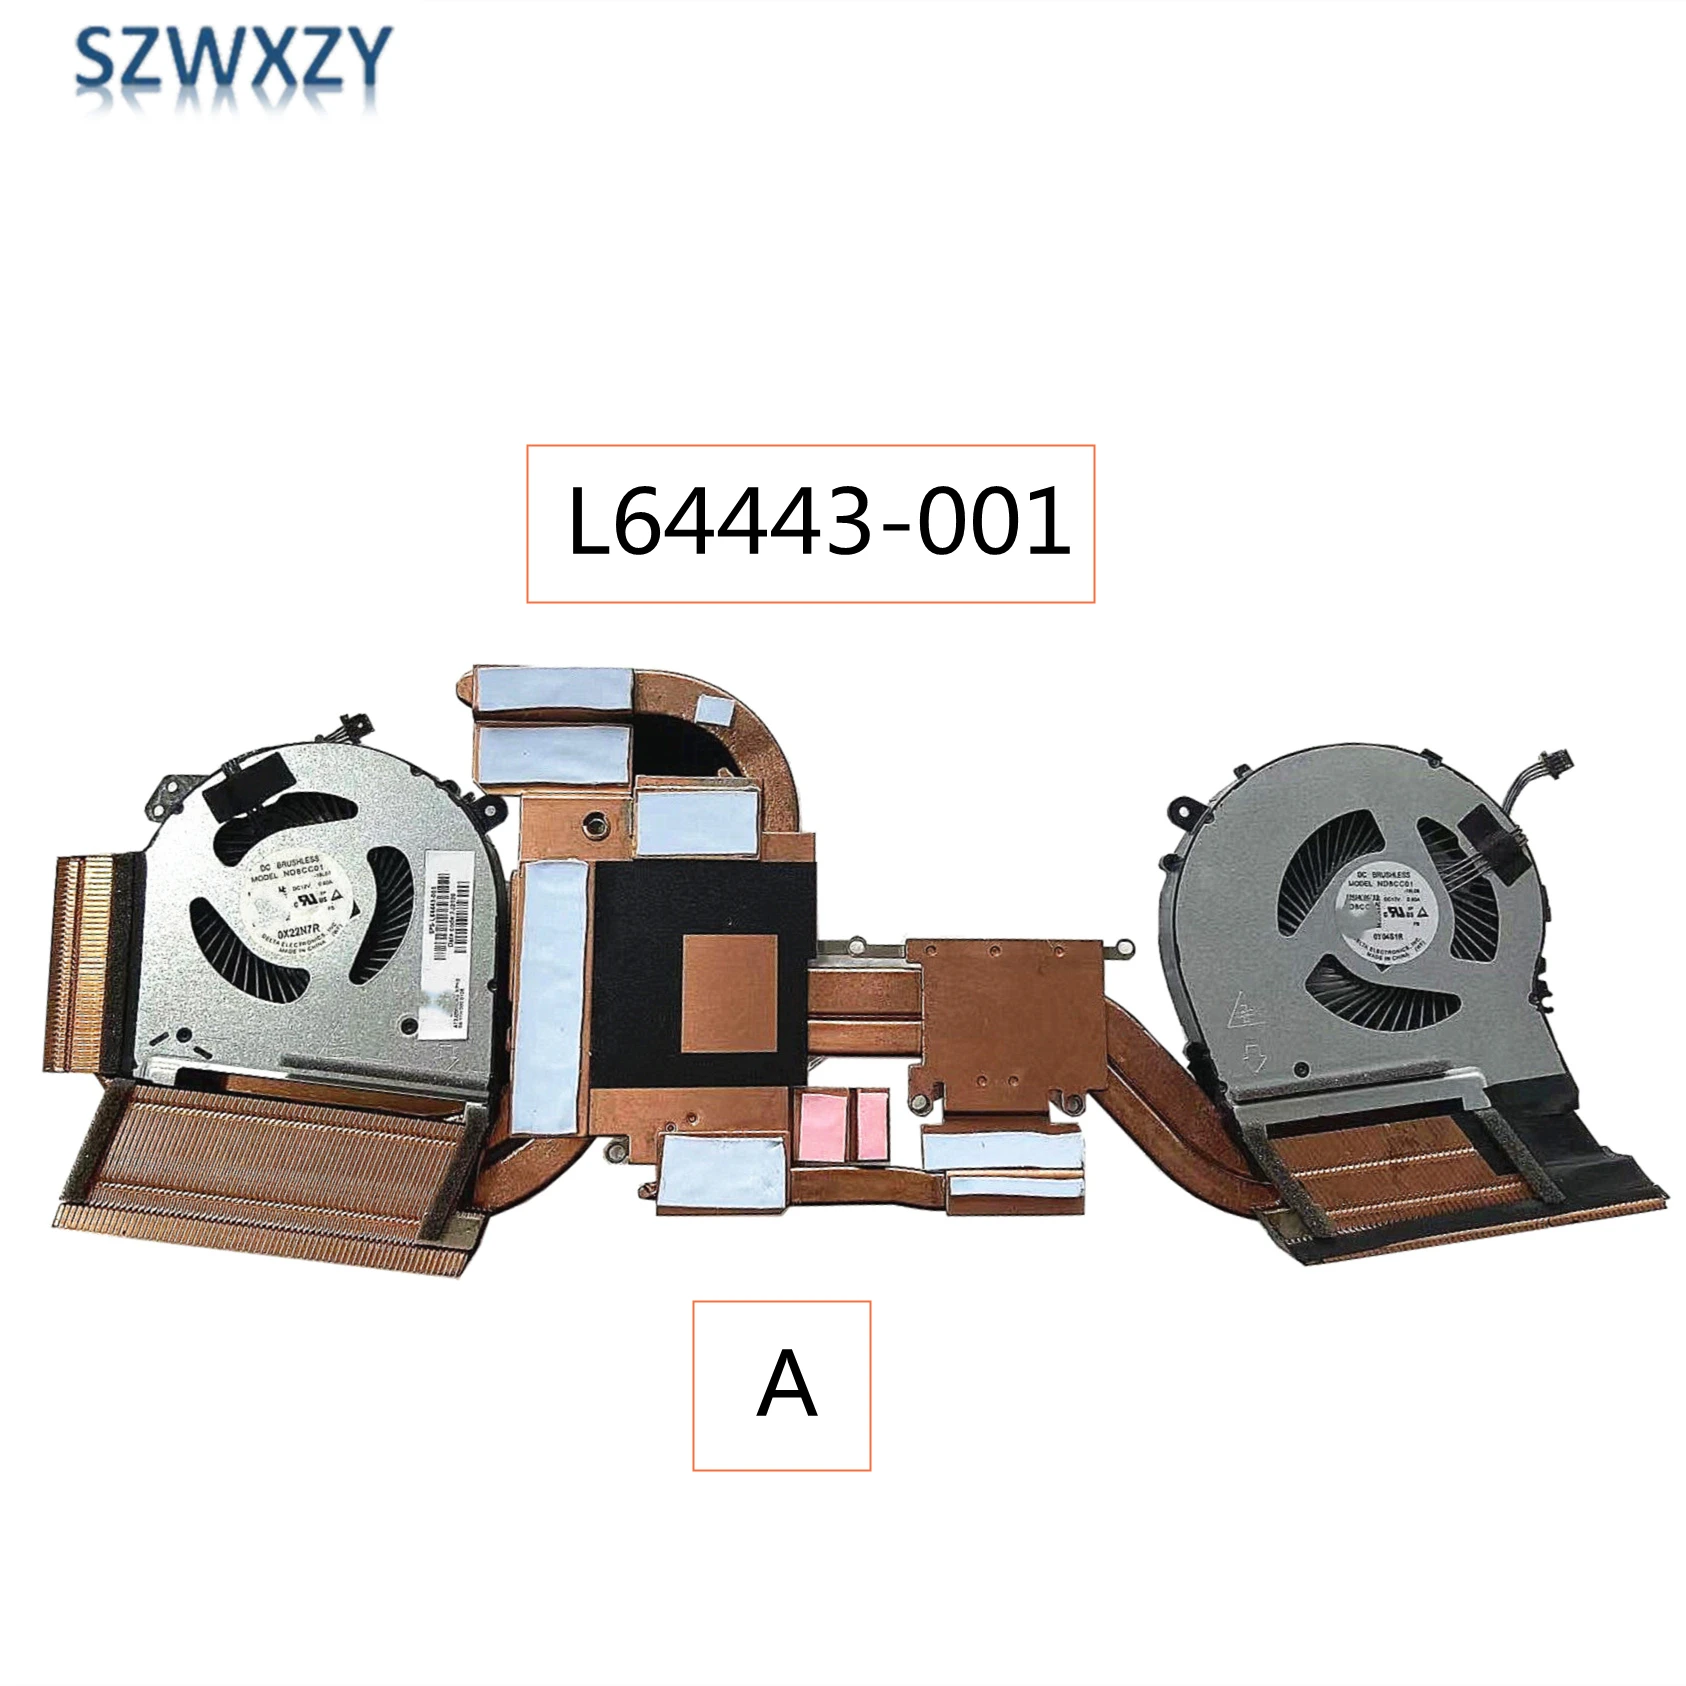 SZWXZY Нови Оригинални за HP 15-DH Радиатор на процесора GPU Охлаждащ вентилатор TPN-C143 L64443-001 L87237-001 Бърза Доставка